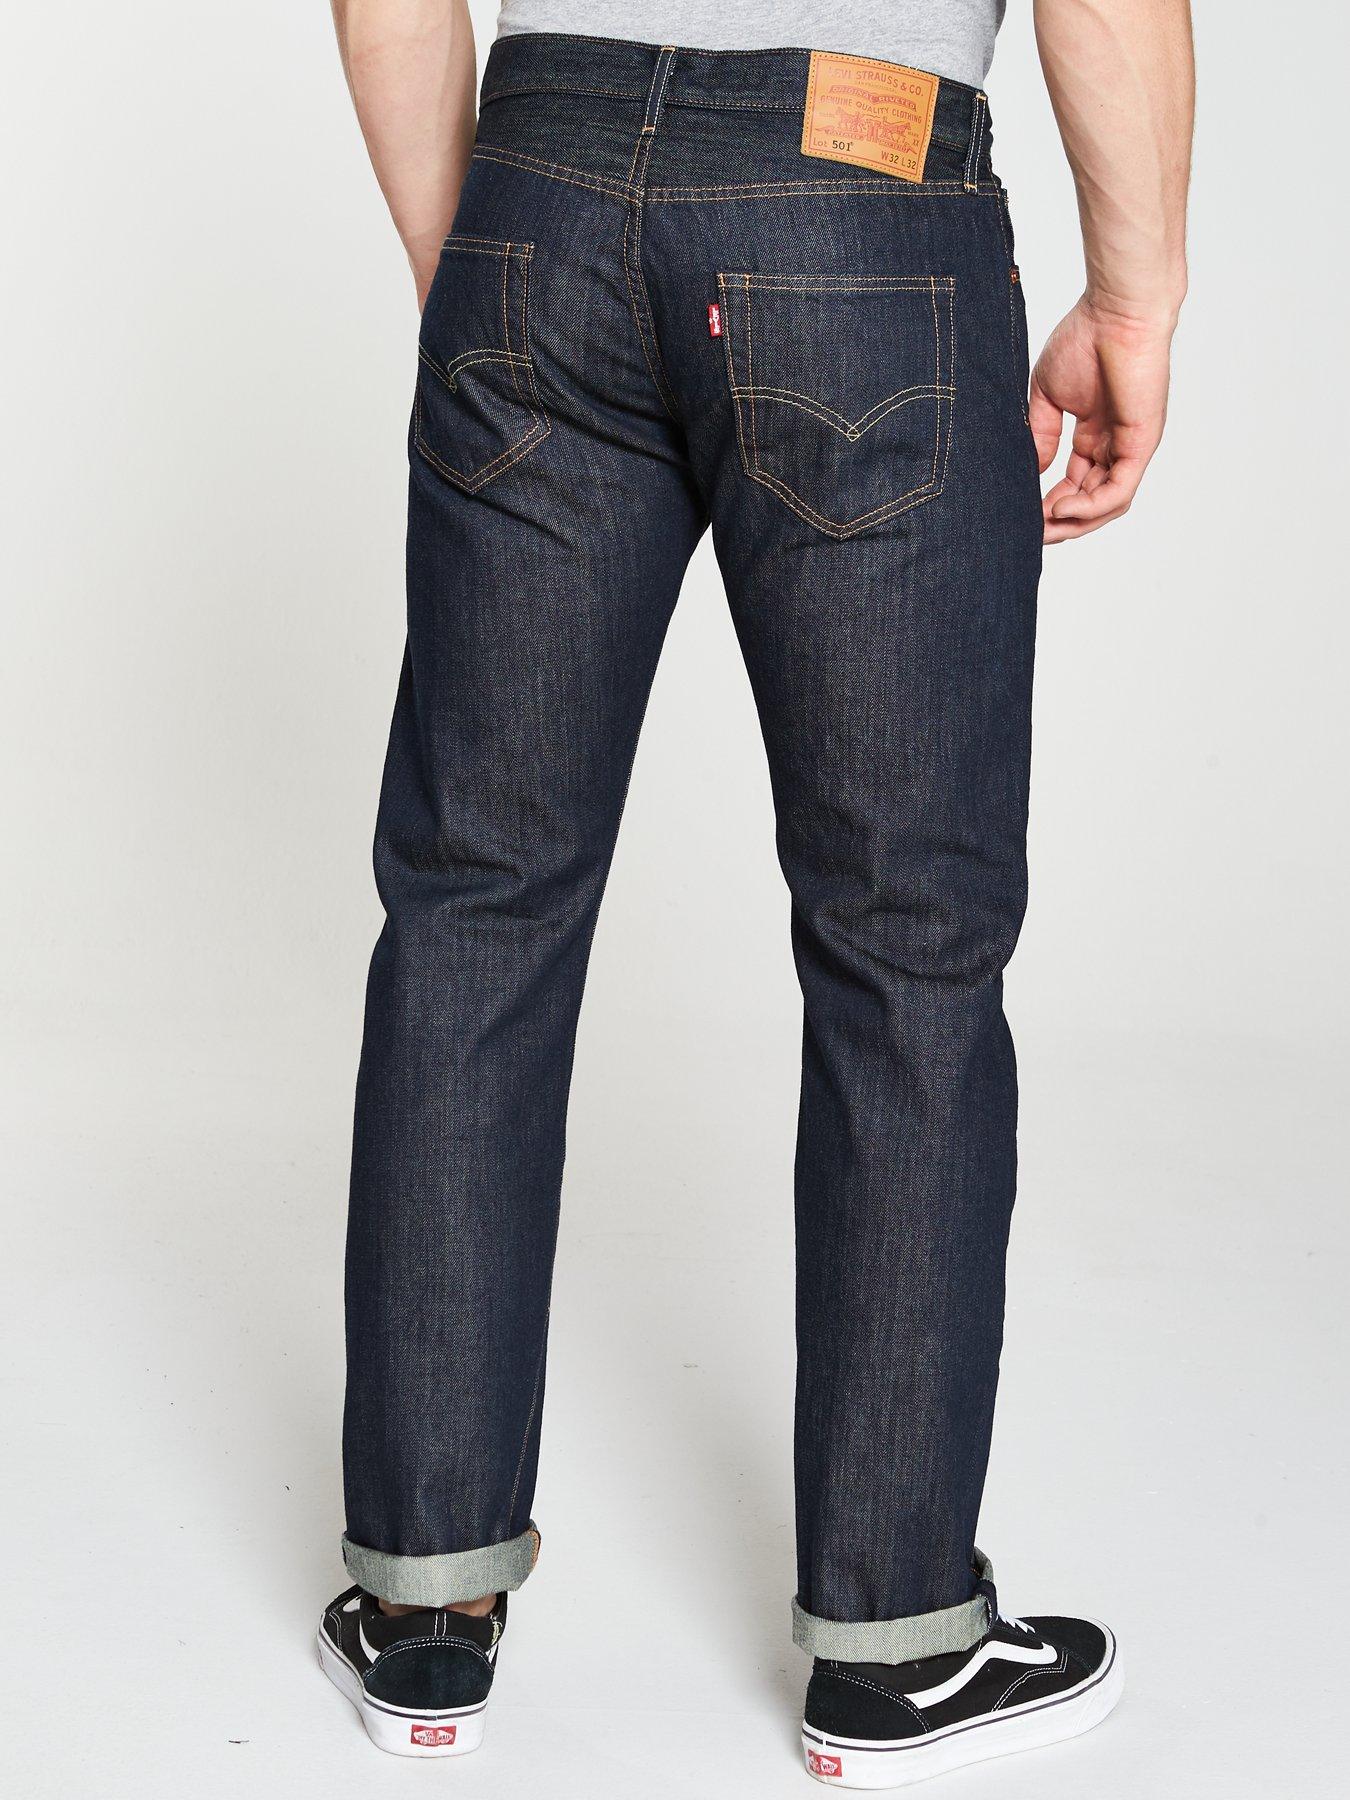 Levi's 501 Original Fit Jeans - Marlon 